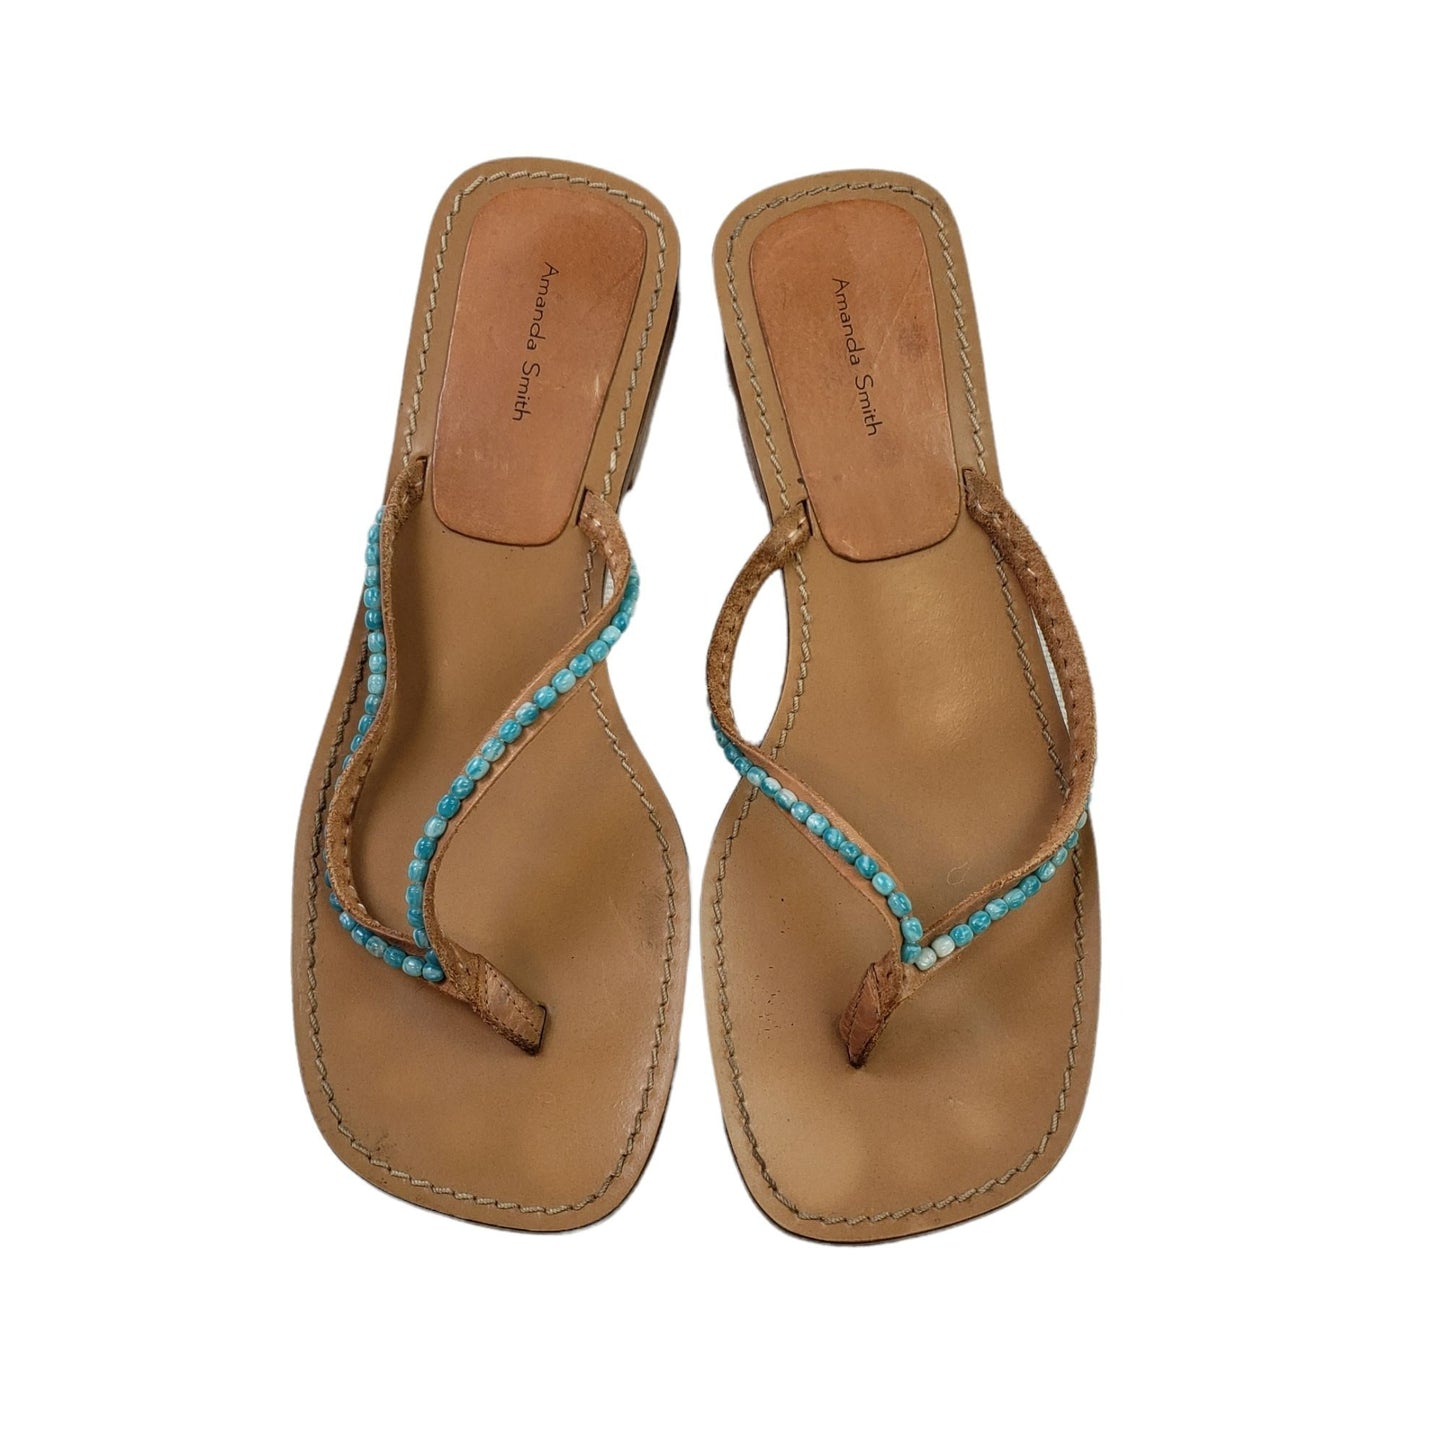 Amanda Smith Caribe Turquoise Beaded Leather Thong Sandals Size 10